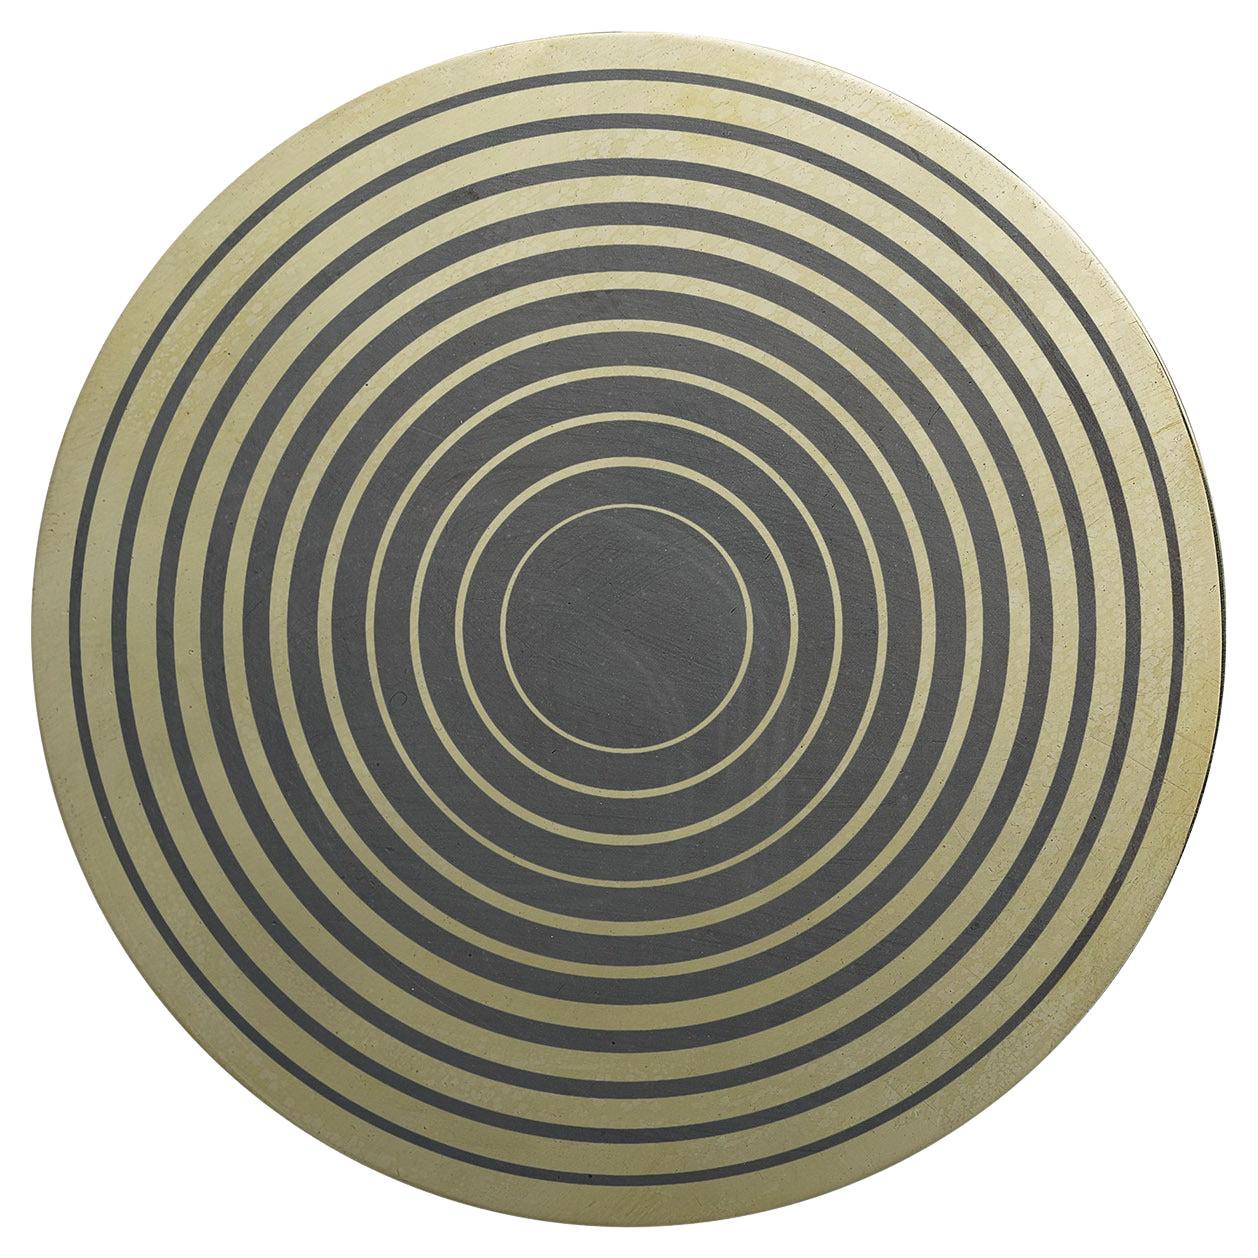 Aniconico Decorative Disk #7 For Sale